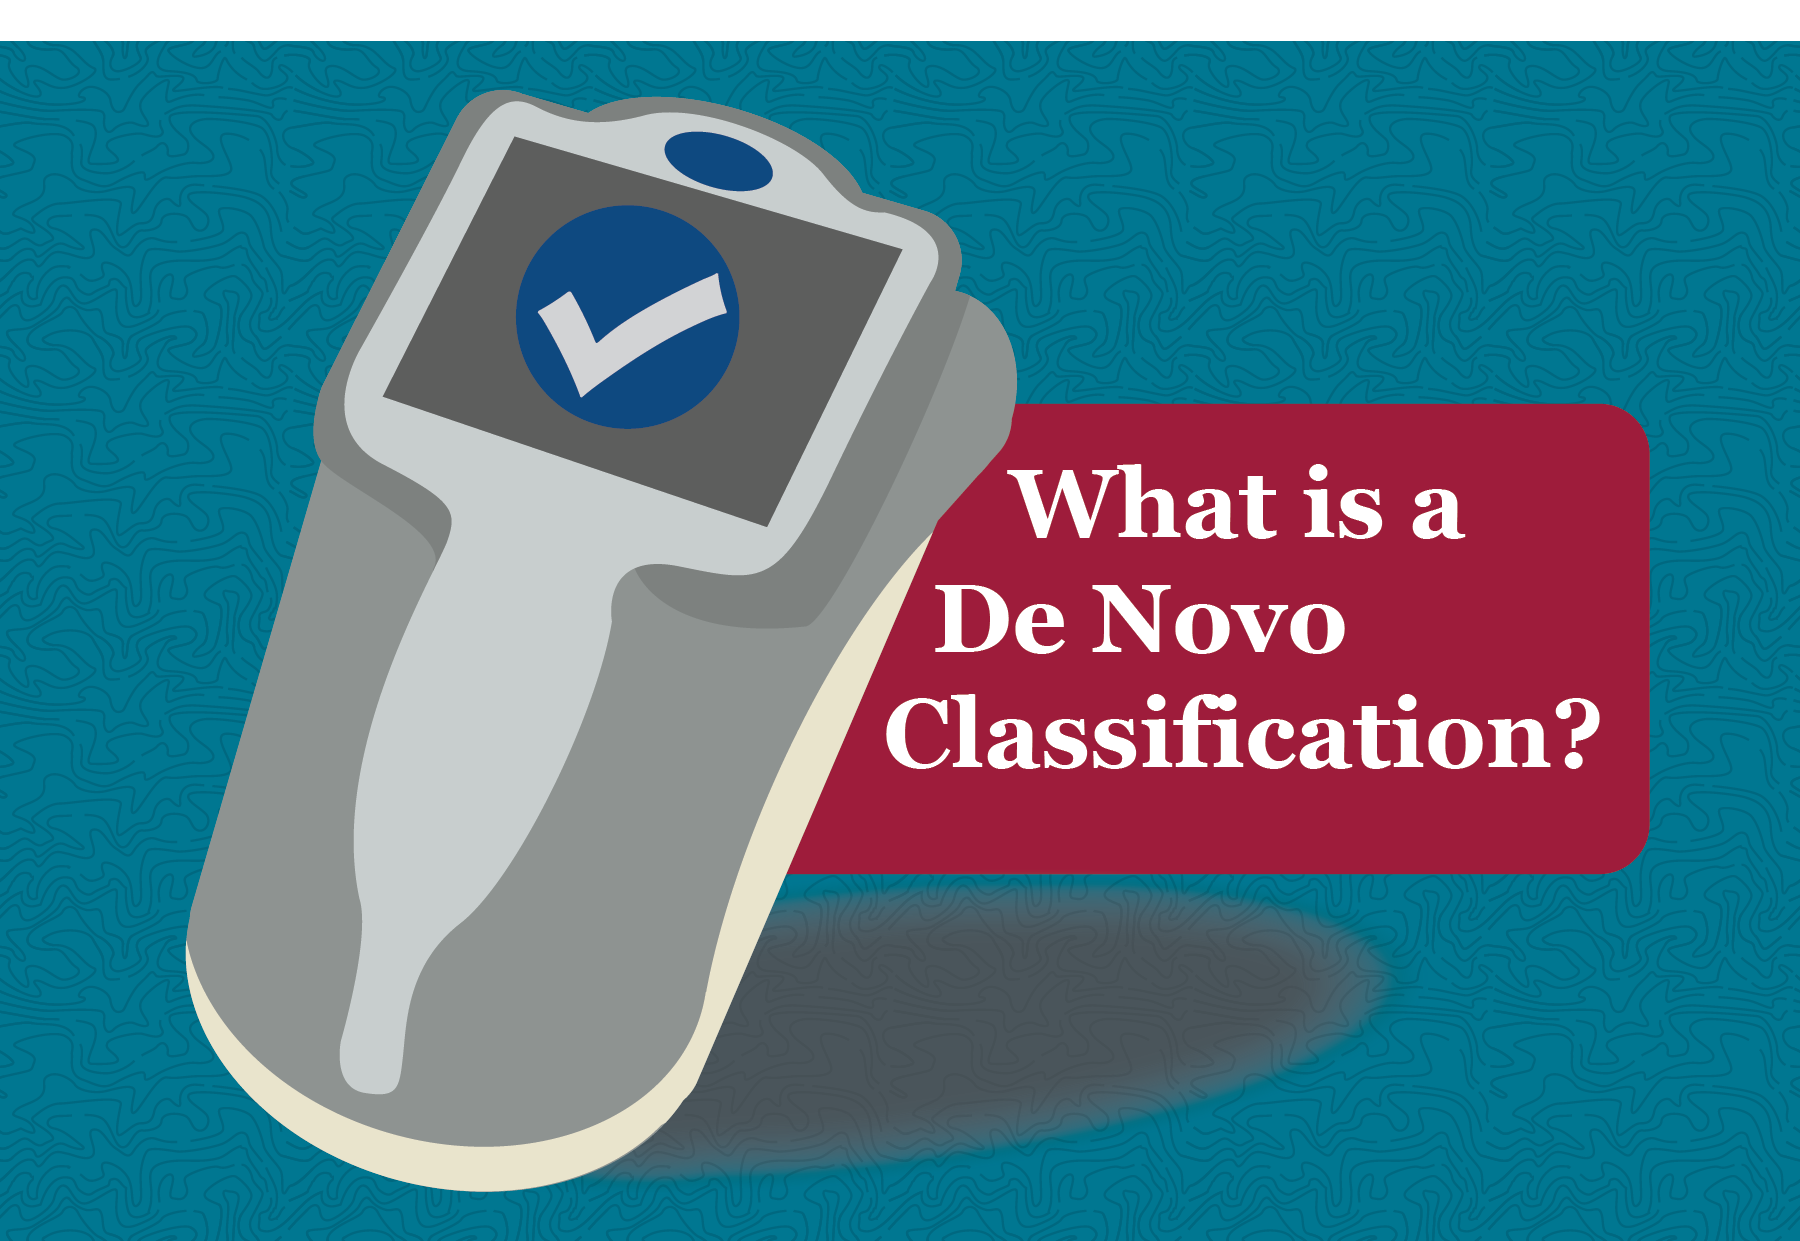 What is a De Novo Classification?